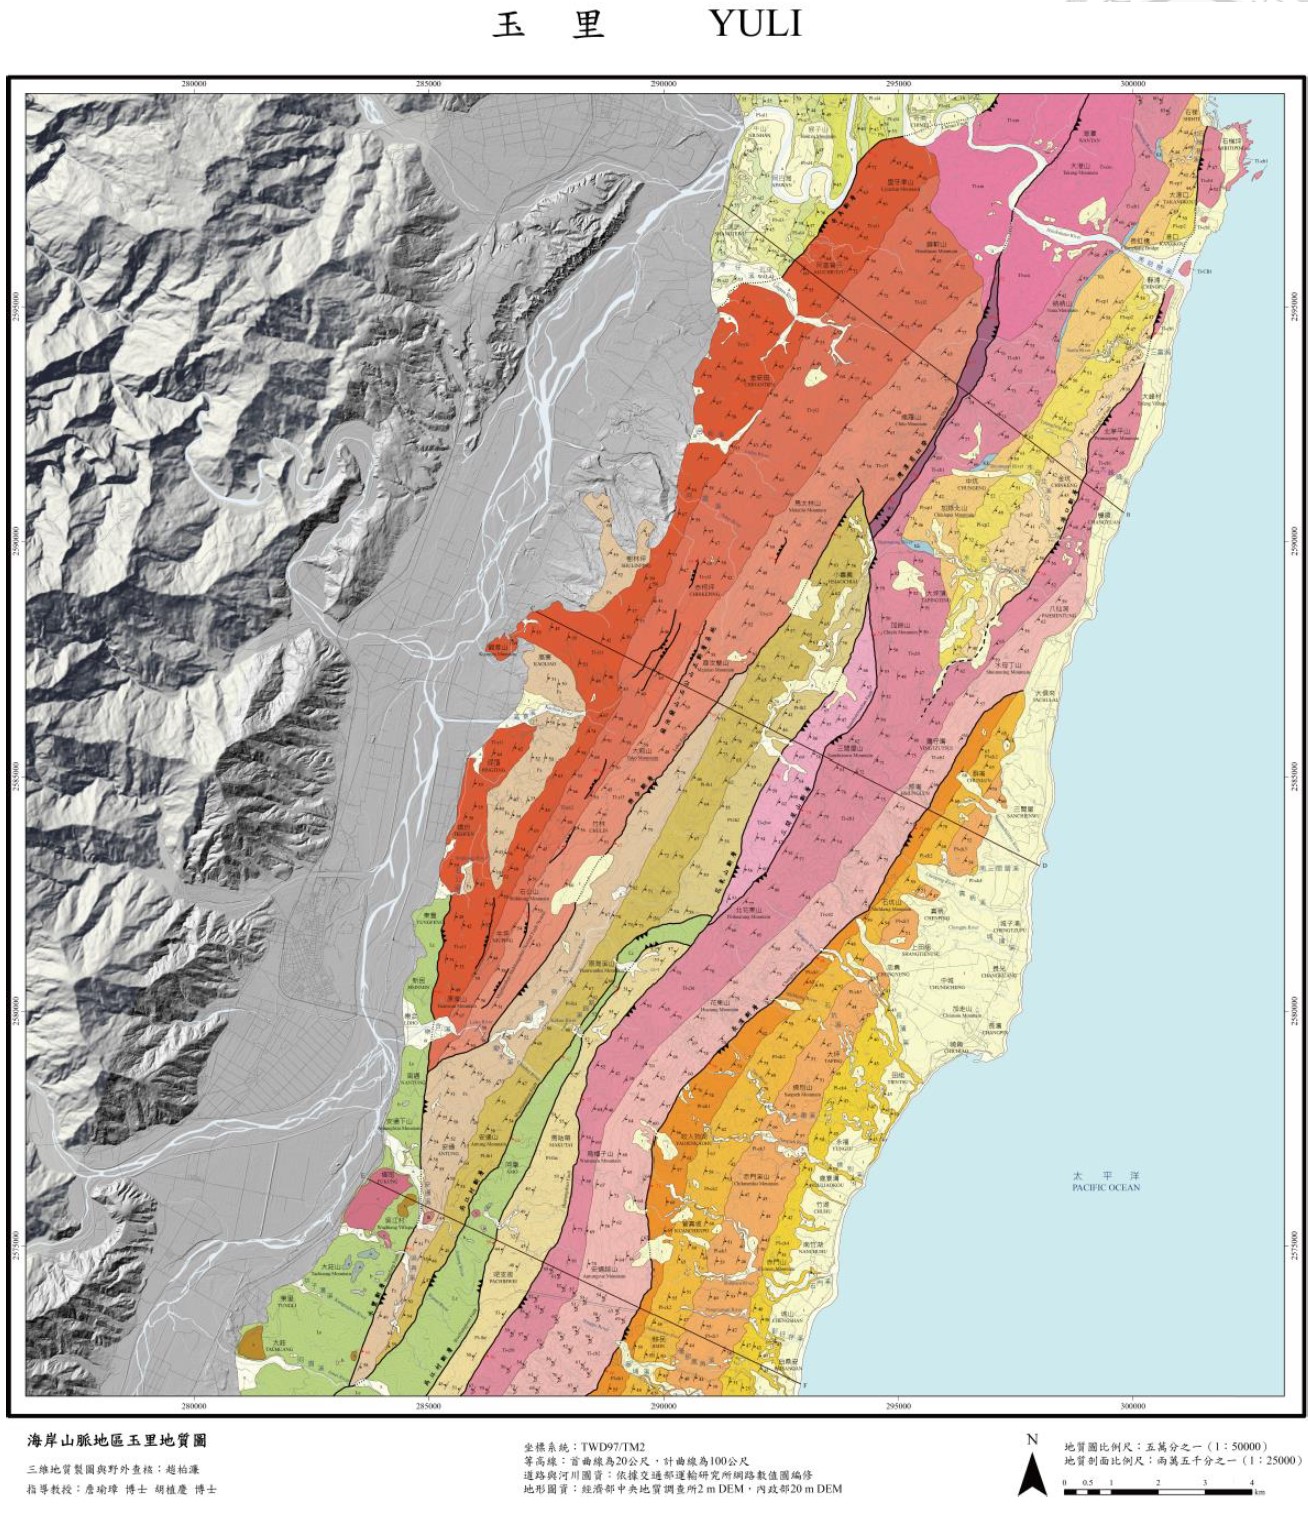 Snapshot of geologic map